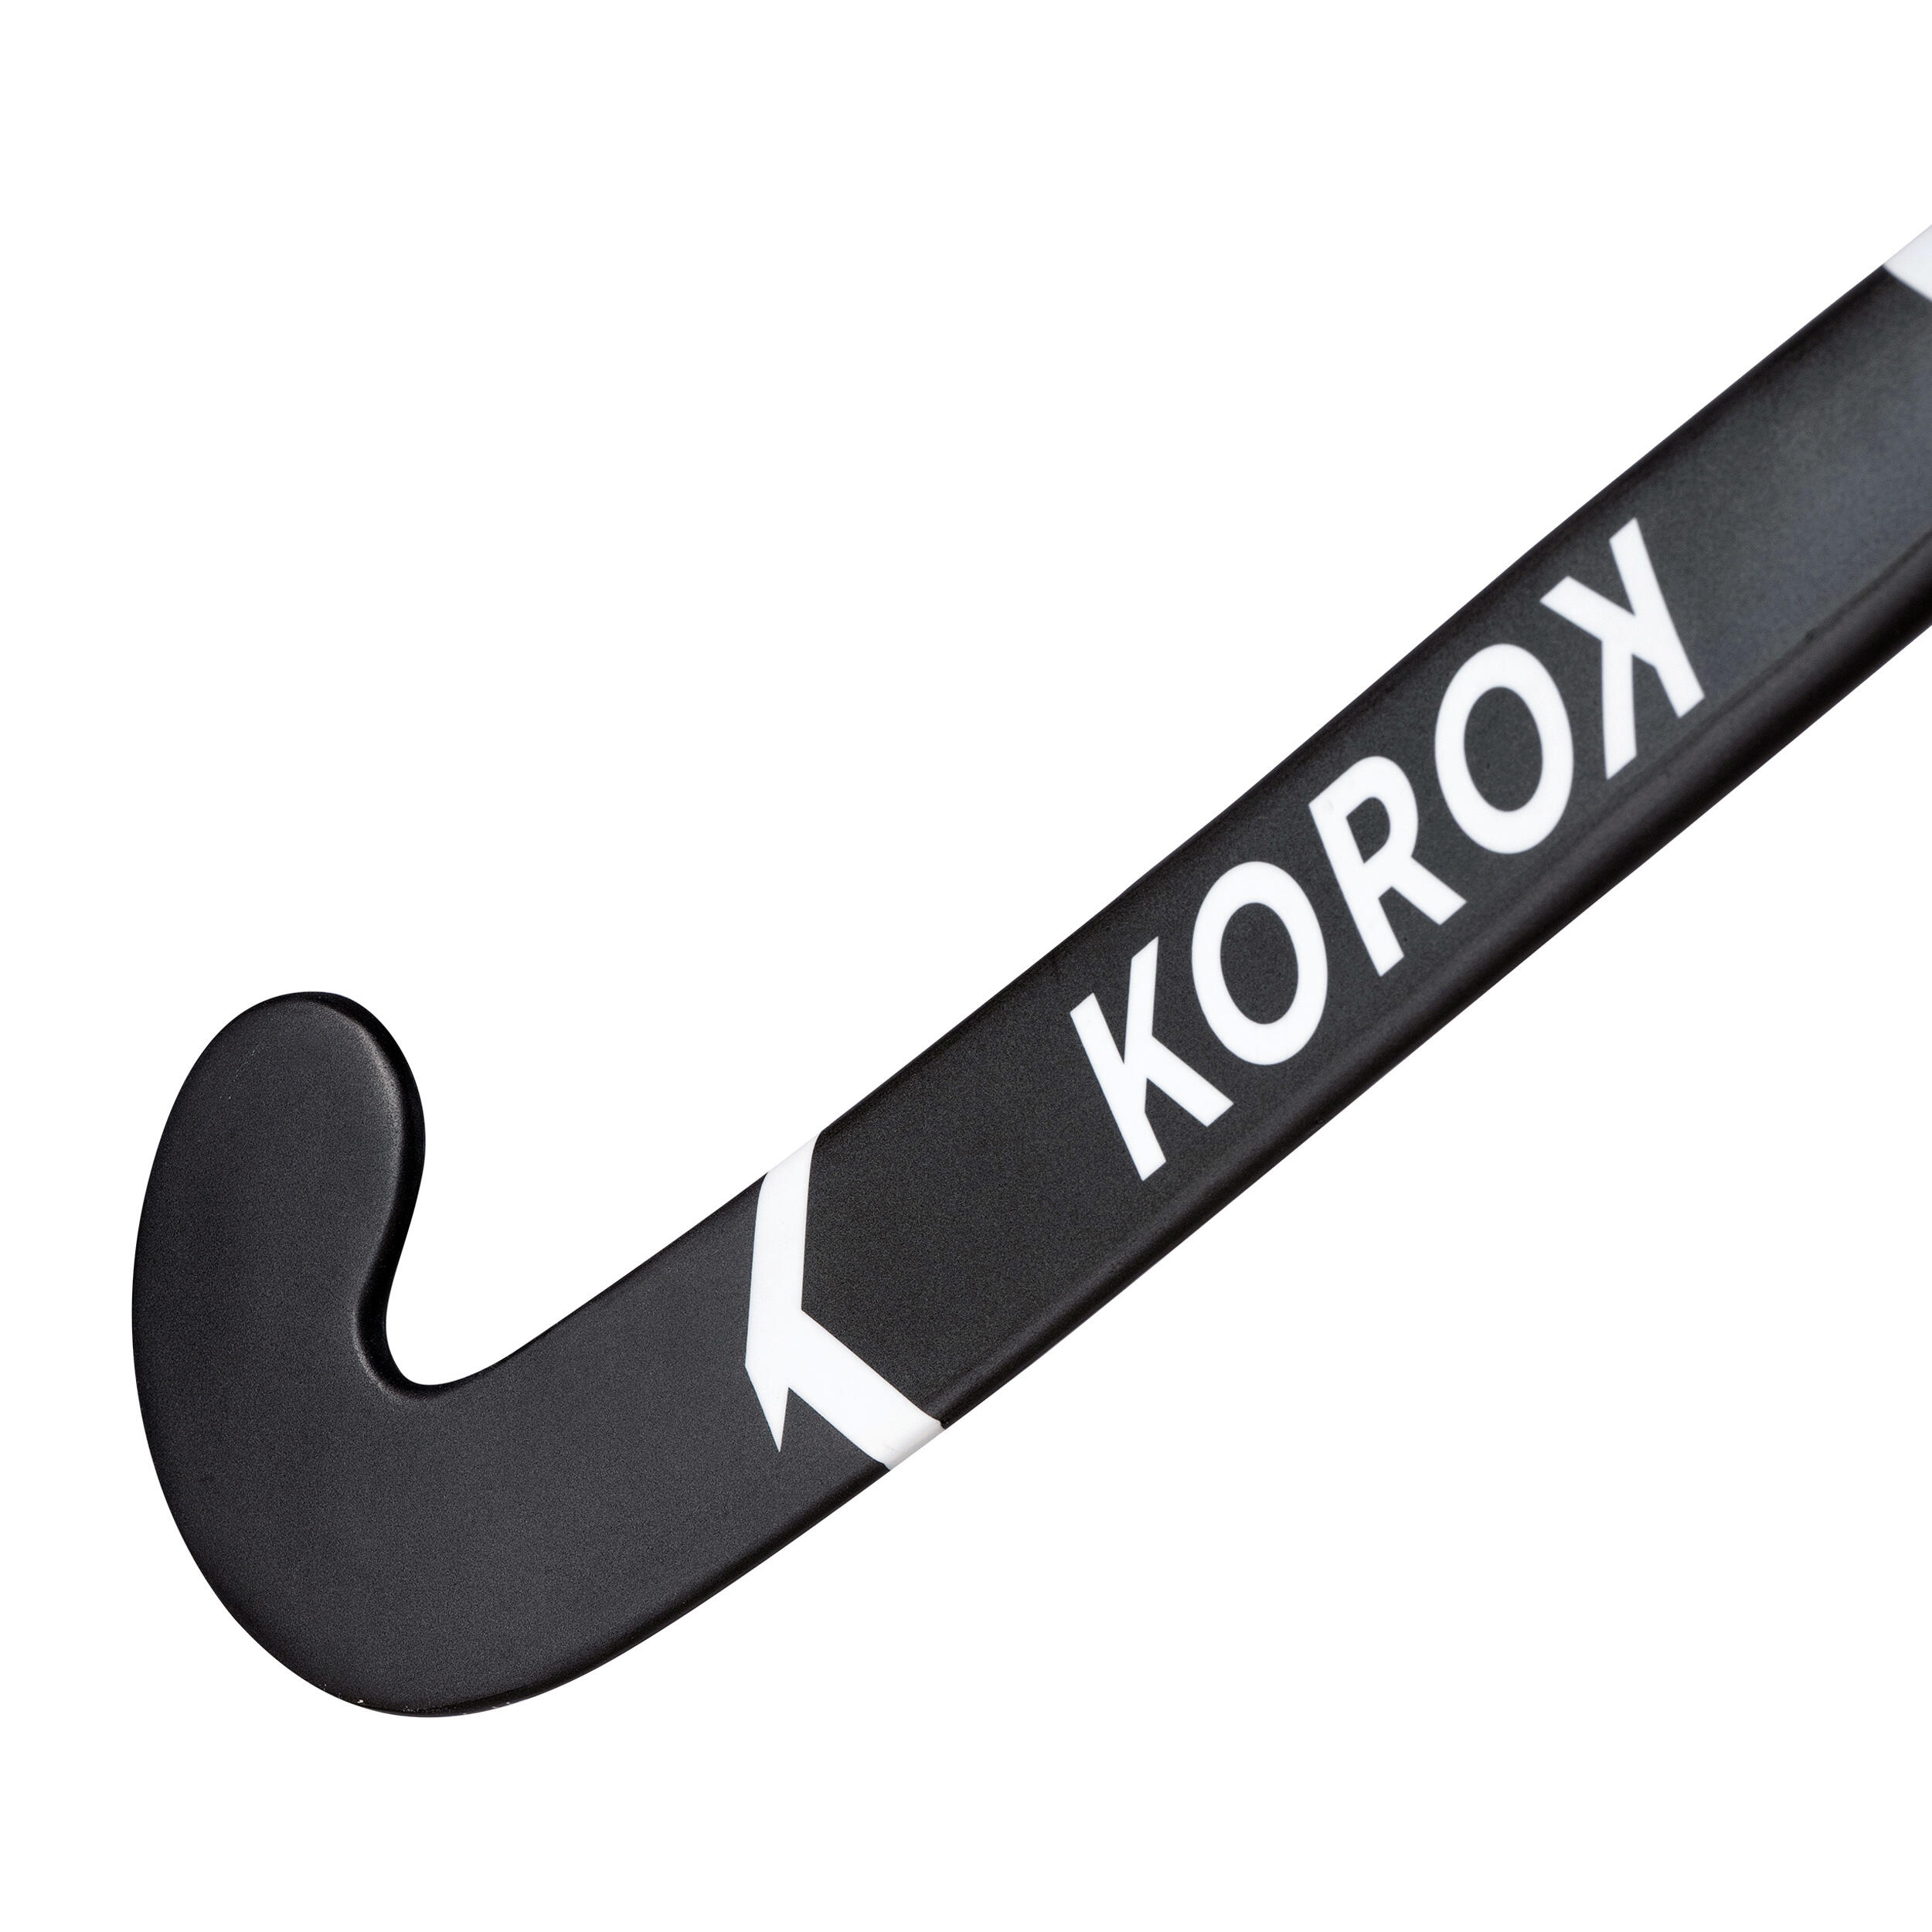 Adult Beginner 100% Fibreglass Mid Bow Indoor Field Hockey Stick FH500 - Grey 2/8